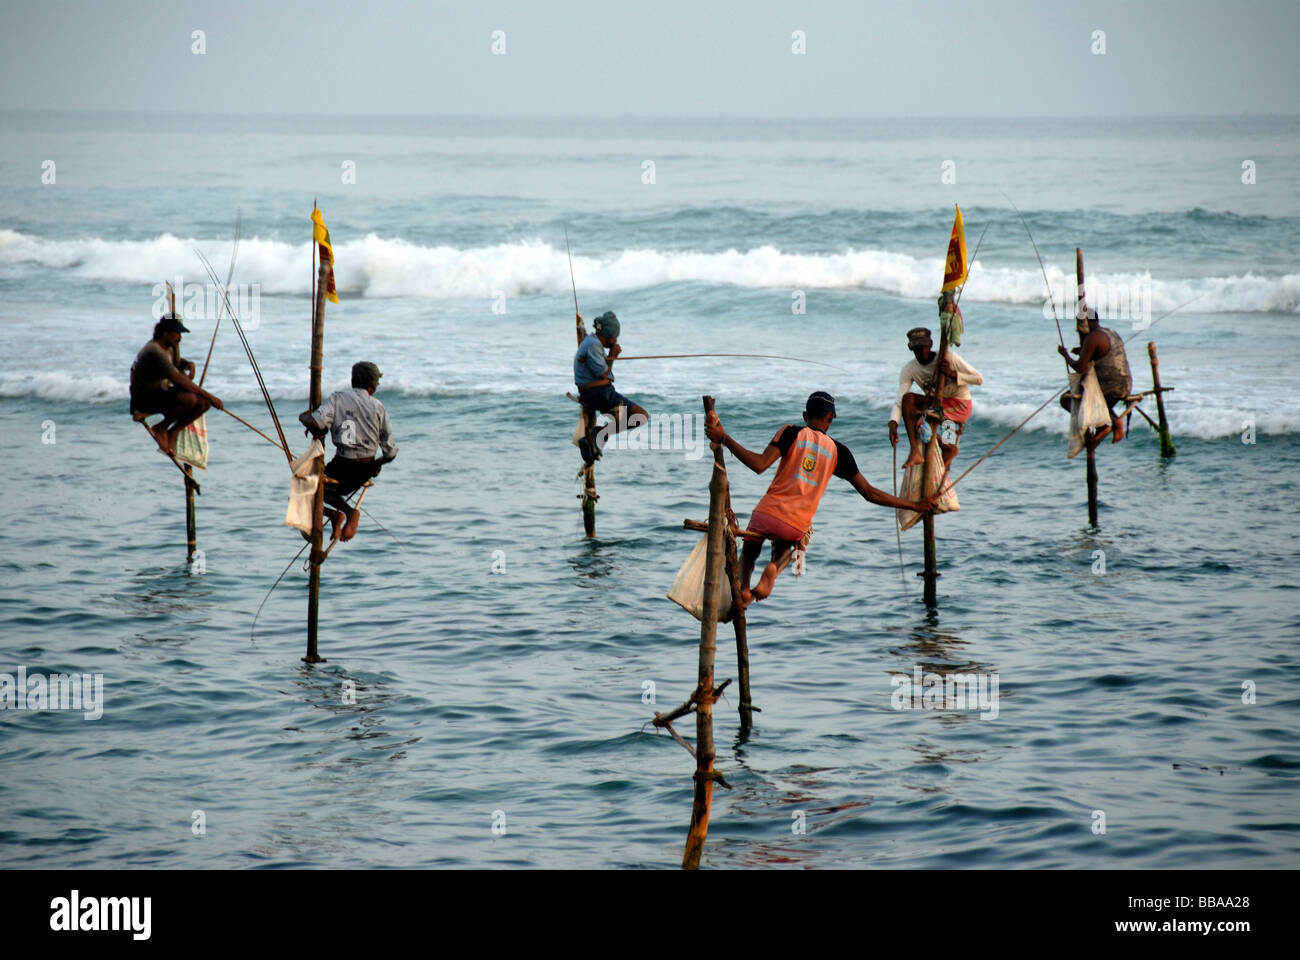 Les pêcheurs sur échasses, les pêcheurs sur pilotis de pêche dans les eaux peu profondes, de l'Océan Indien, Ceylan, le Sri Lanka, l'Asie du Sud, Asie Banque D'Images